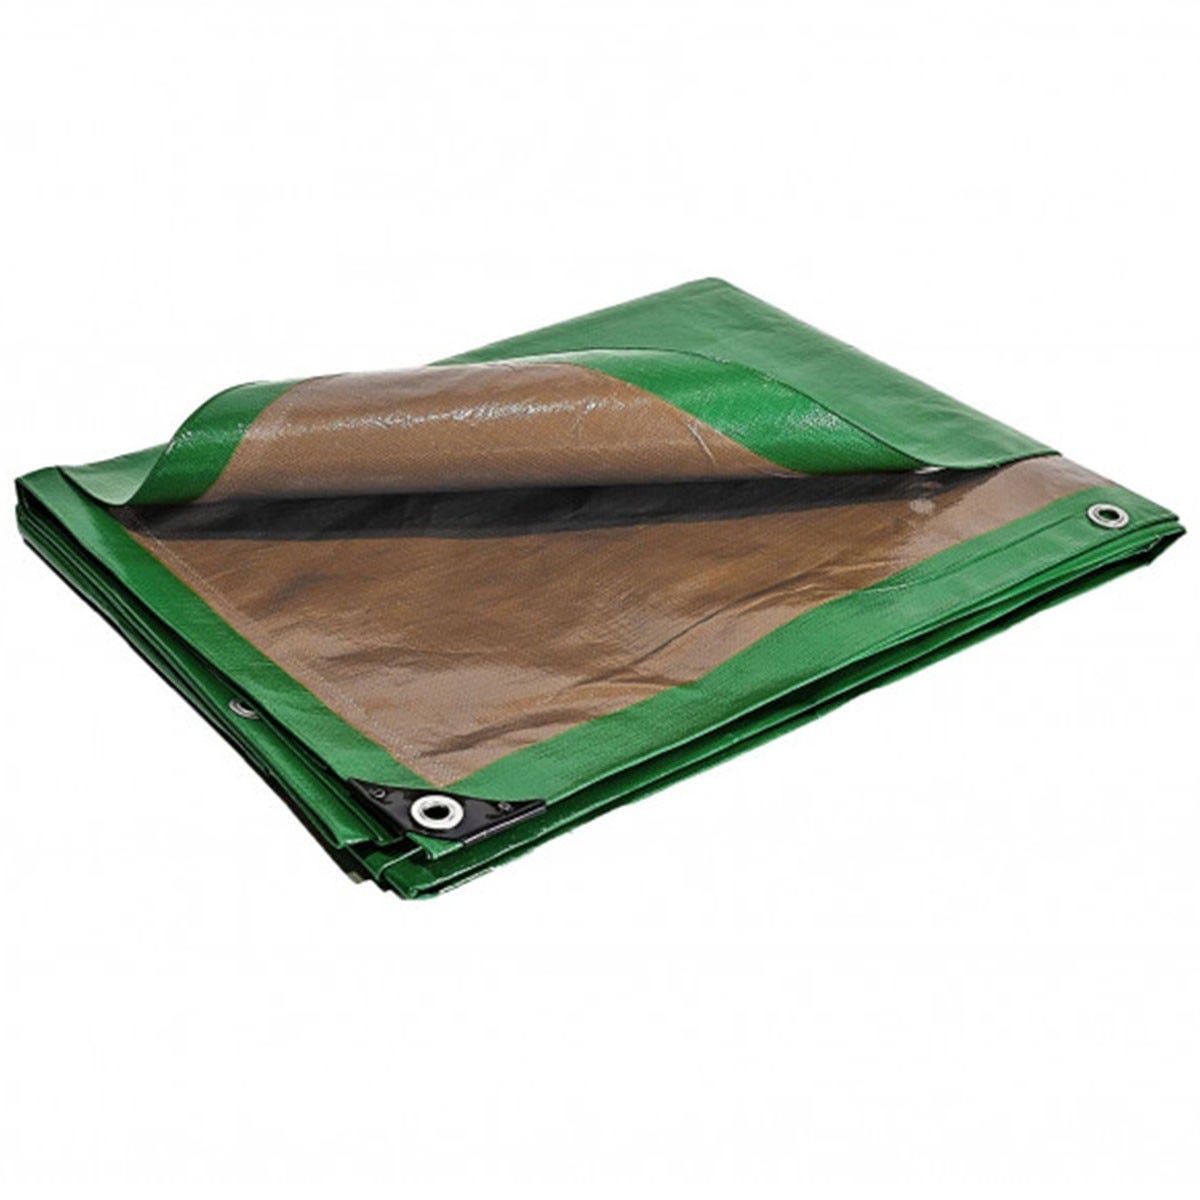 Bâche pergola 6 x 10 m Traitée Anti UV Toile pour tonnelle verte et marron polyéthylène 250g/m² haute qualité 0